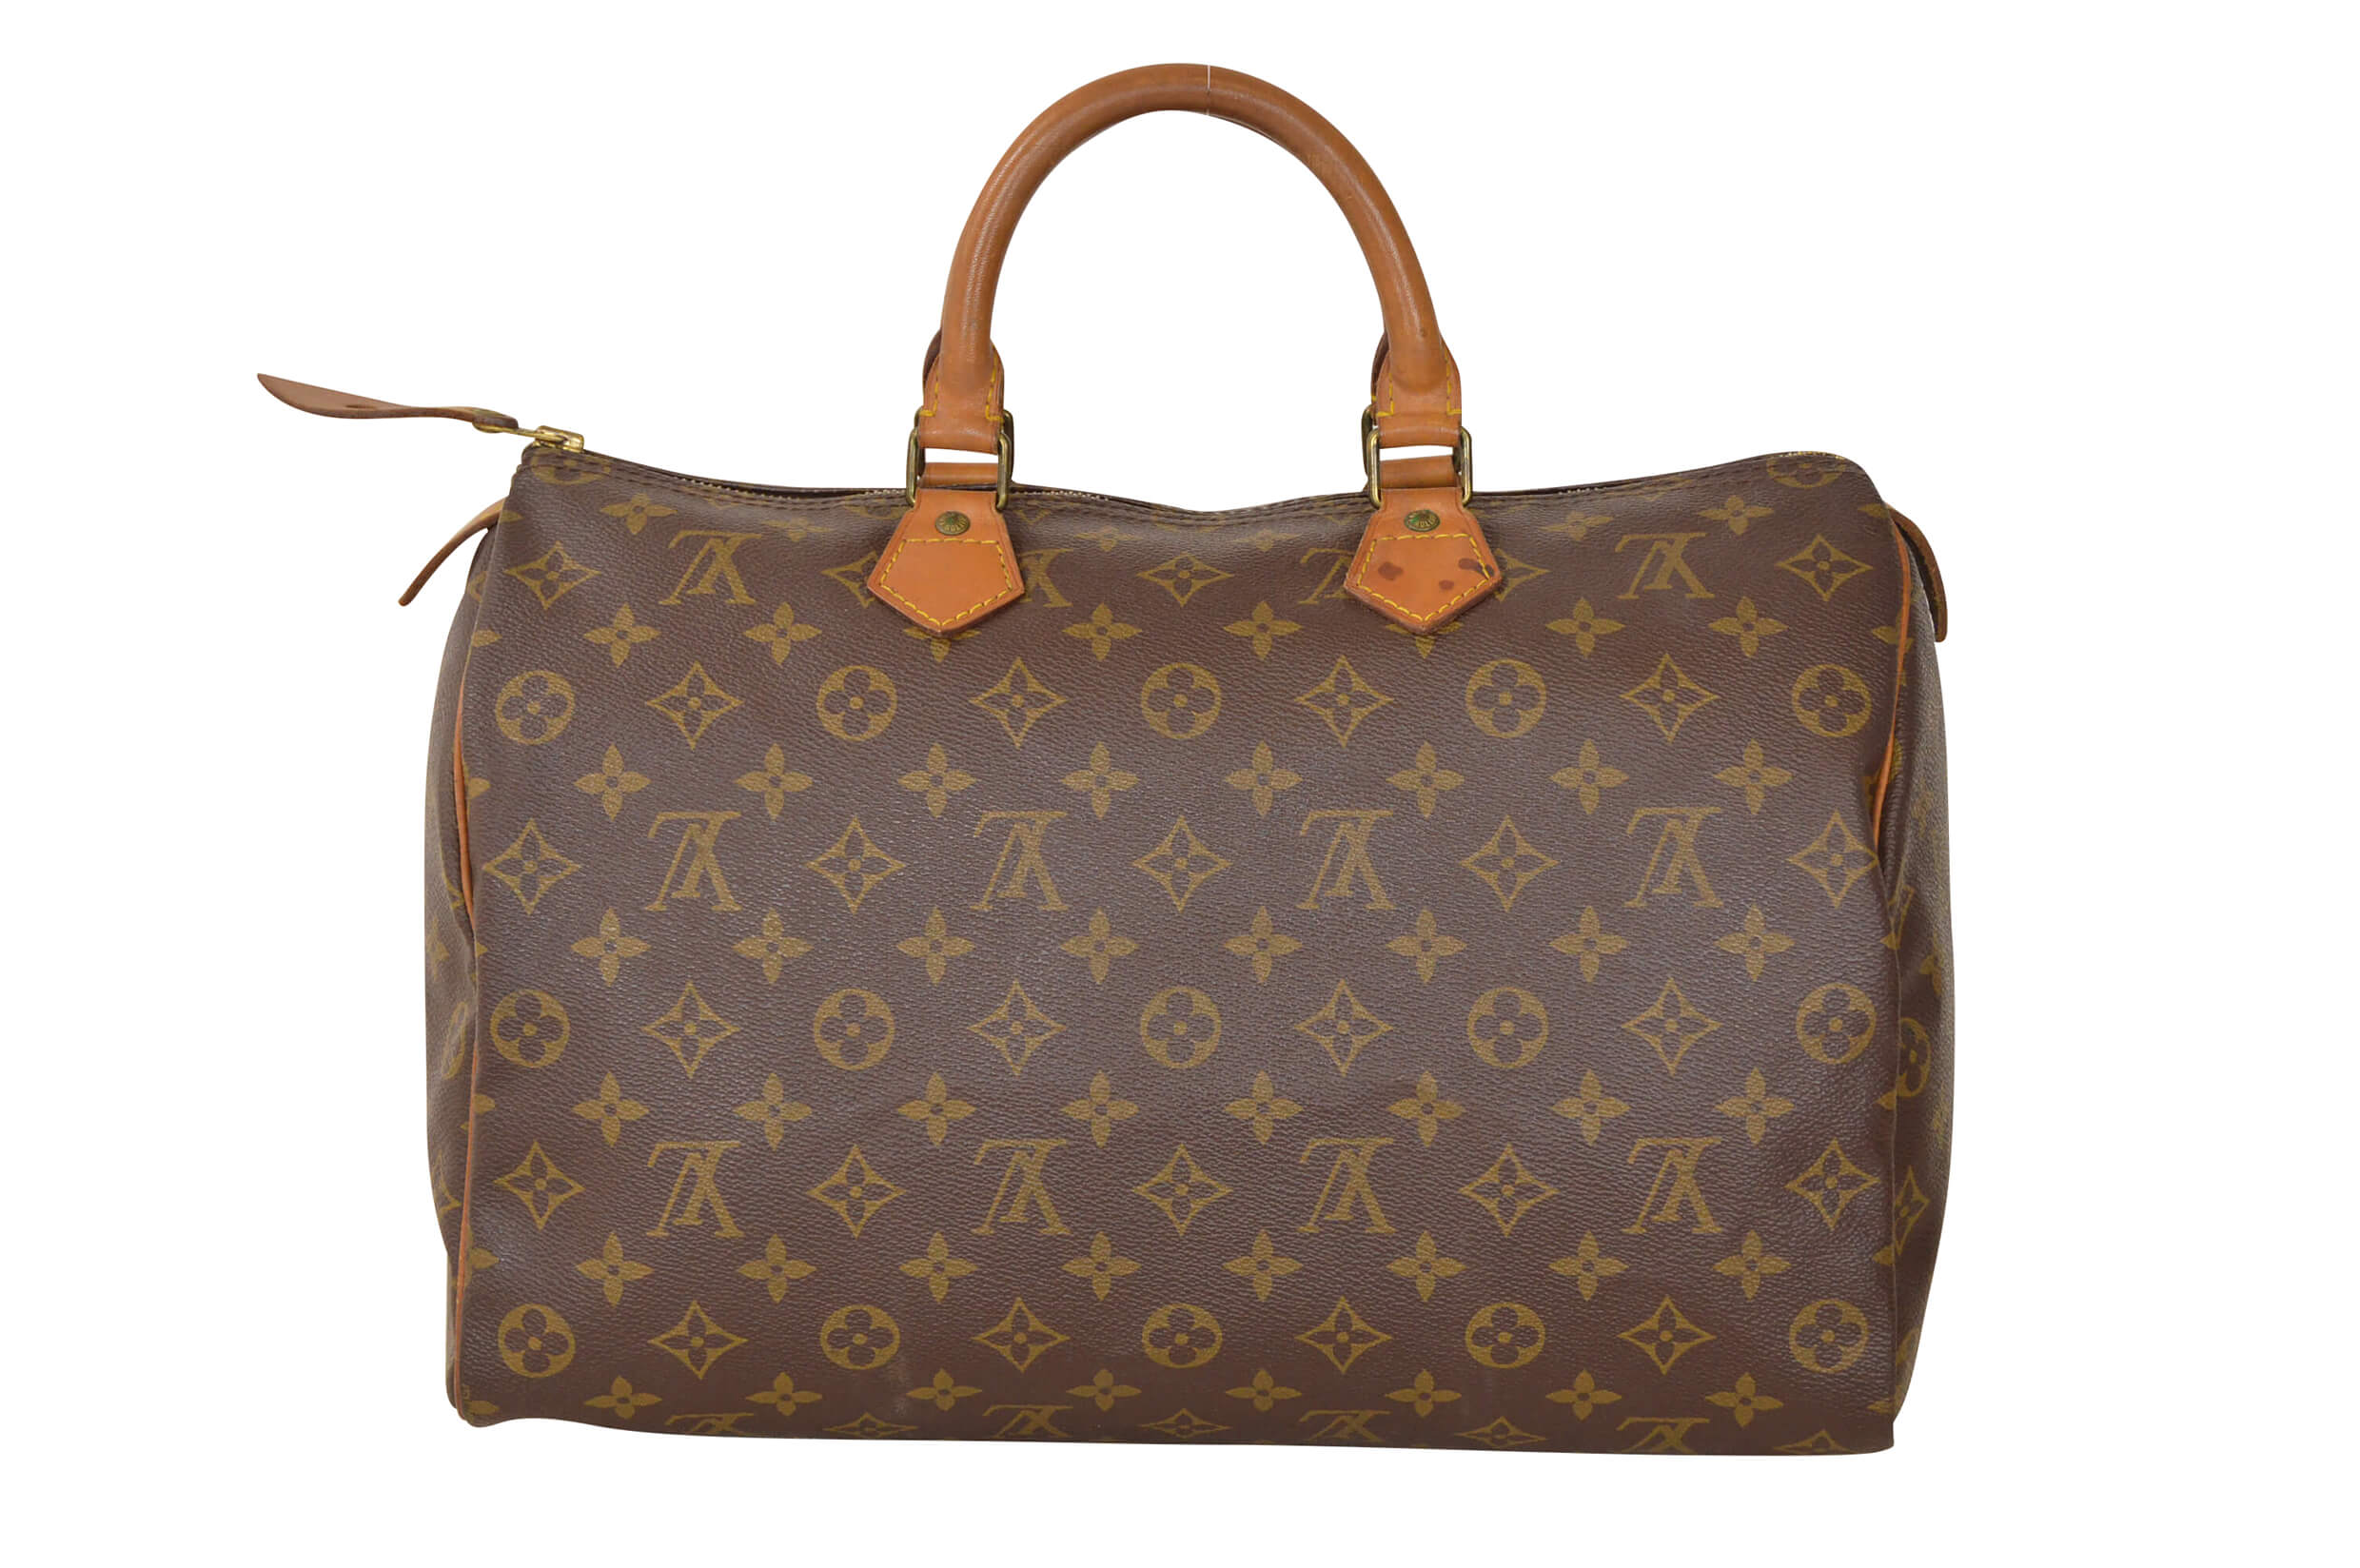 Louis Vuitton Monogram Speedy 35 Malletier Hand Bag M41524 | eBay